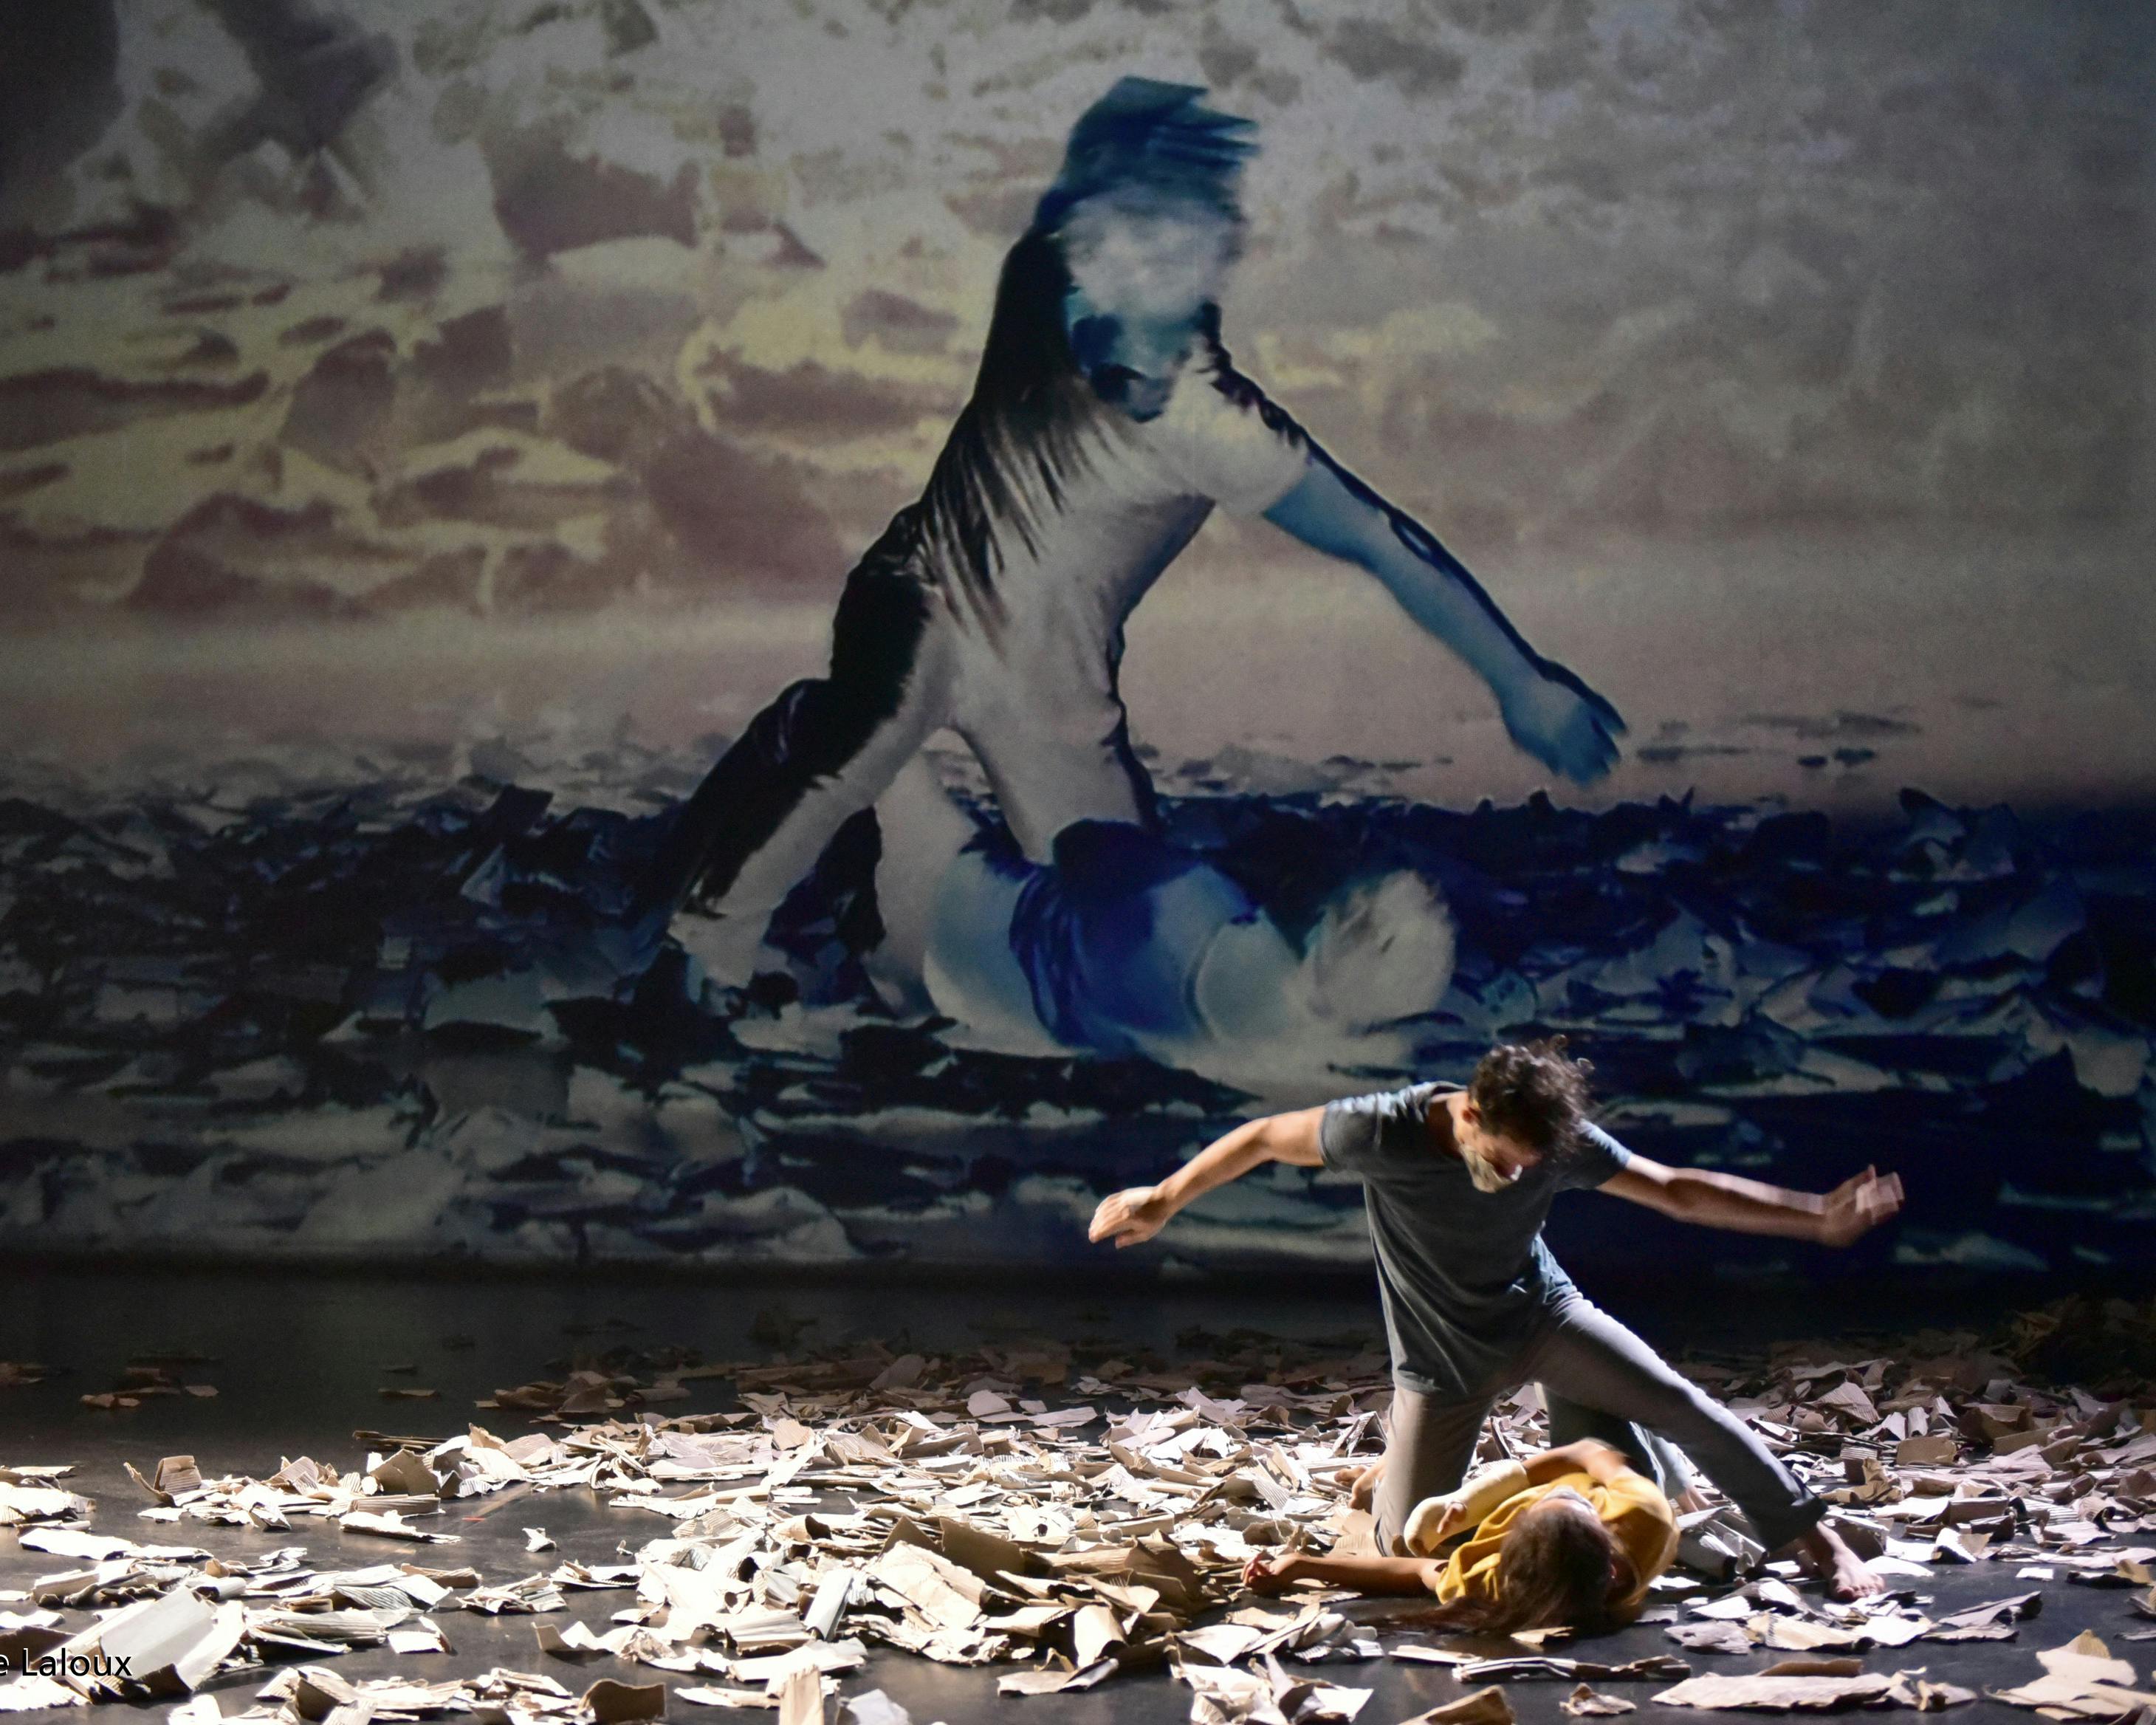 Una danzatrice stesa sul palco con fogli di carta e un danzatore in ginocchio accanto a lei. Nello sfondo la stessa immagine in video proiezione.